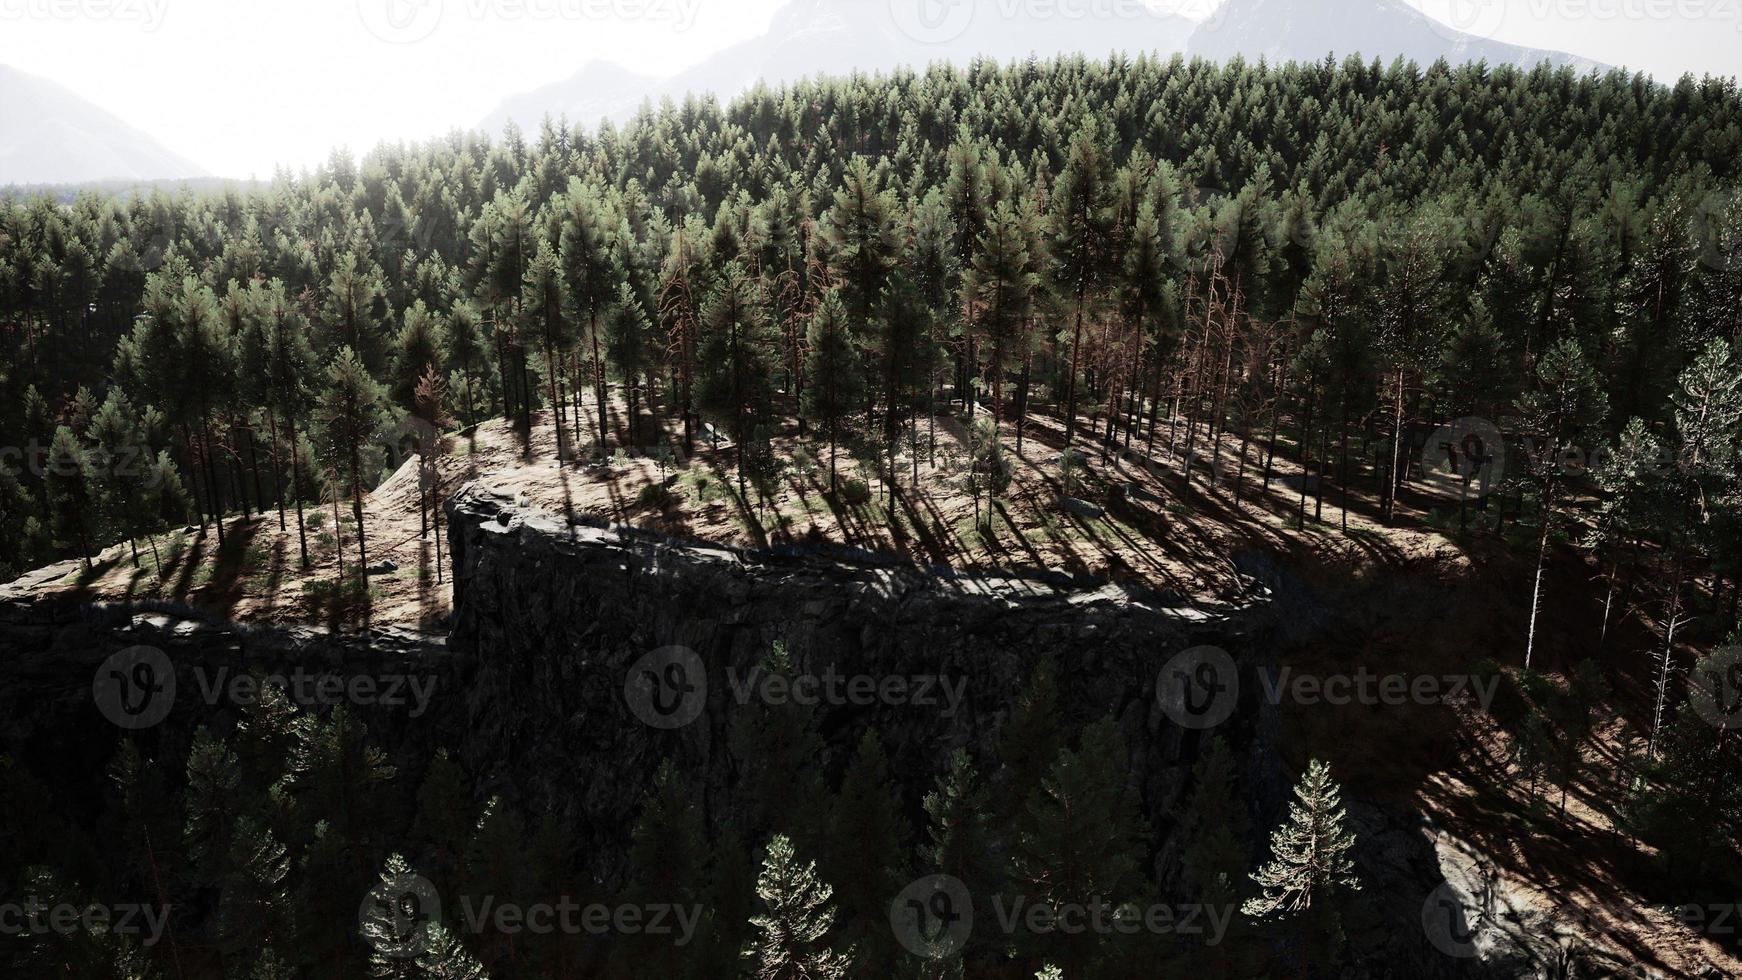 bosque de pinos en las montañas foto